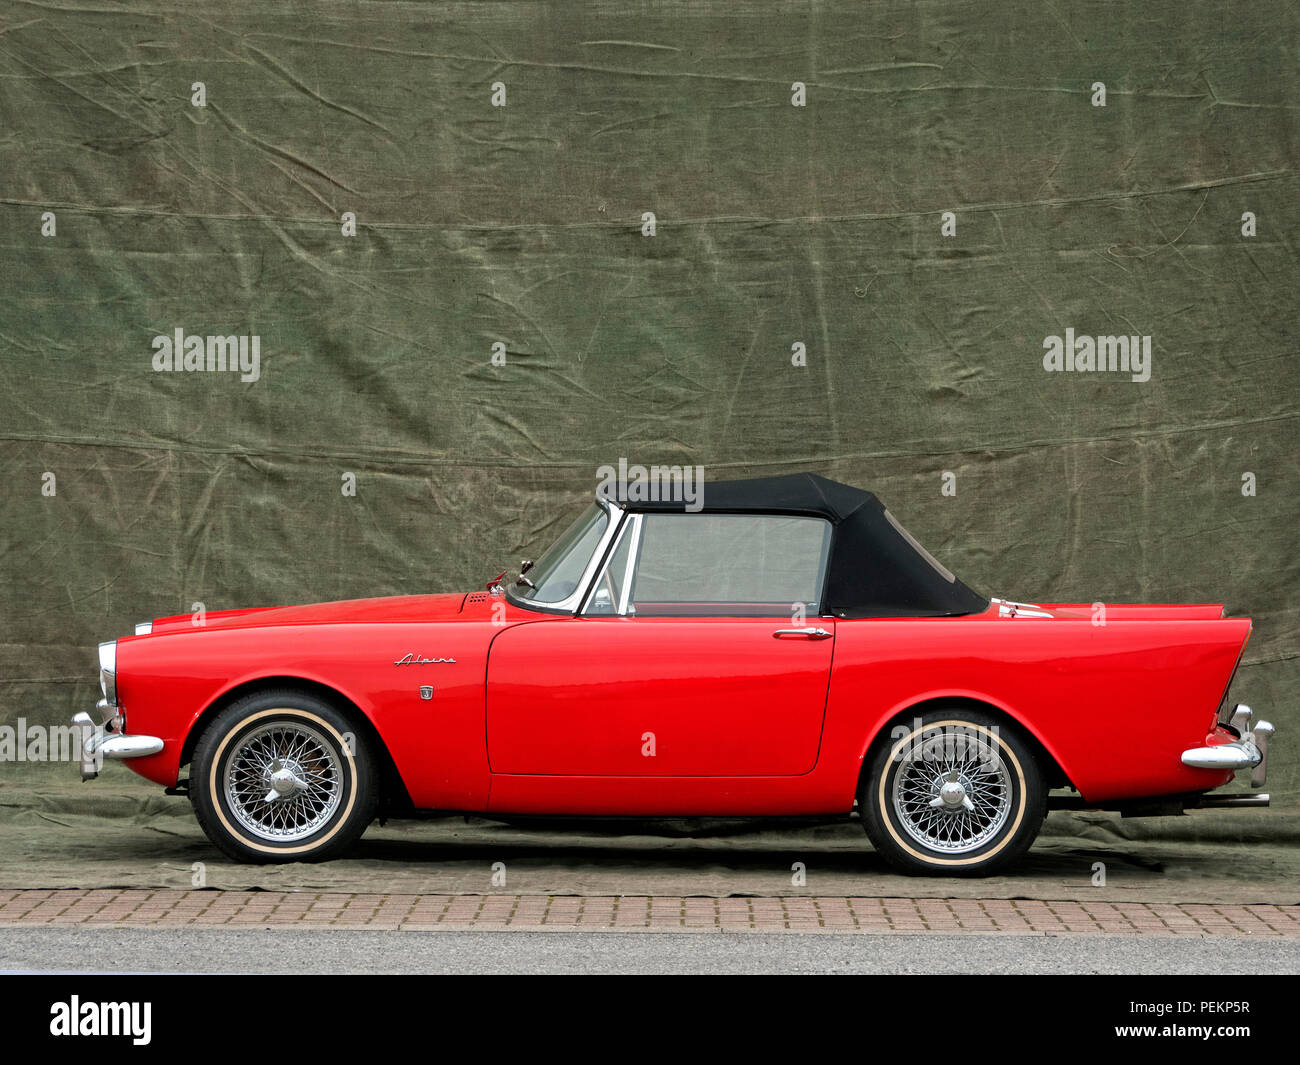 1964 Sunbeam Alpine Mkiii Stock Photo Alamy